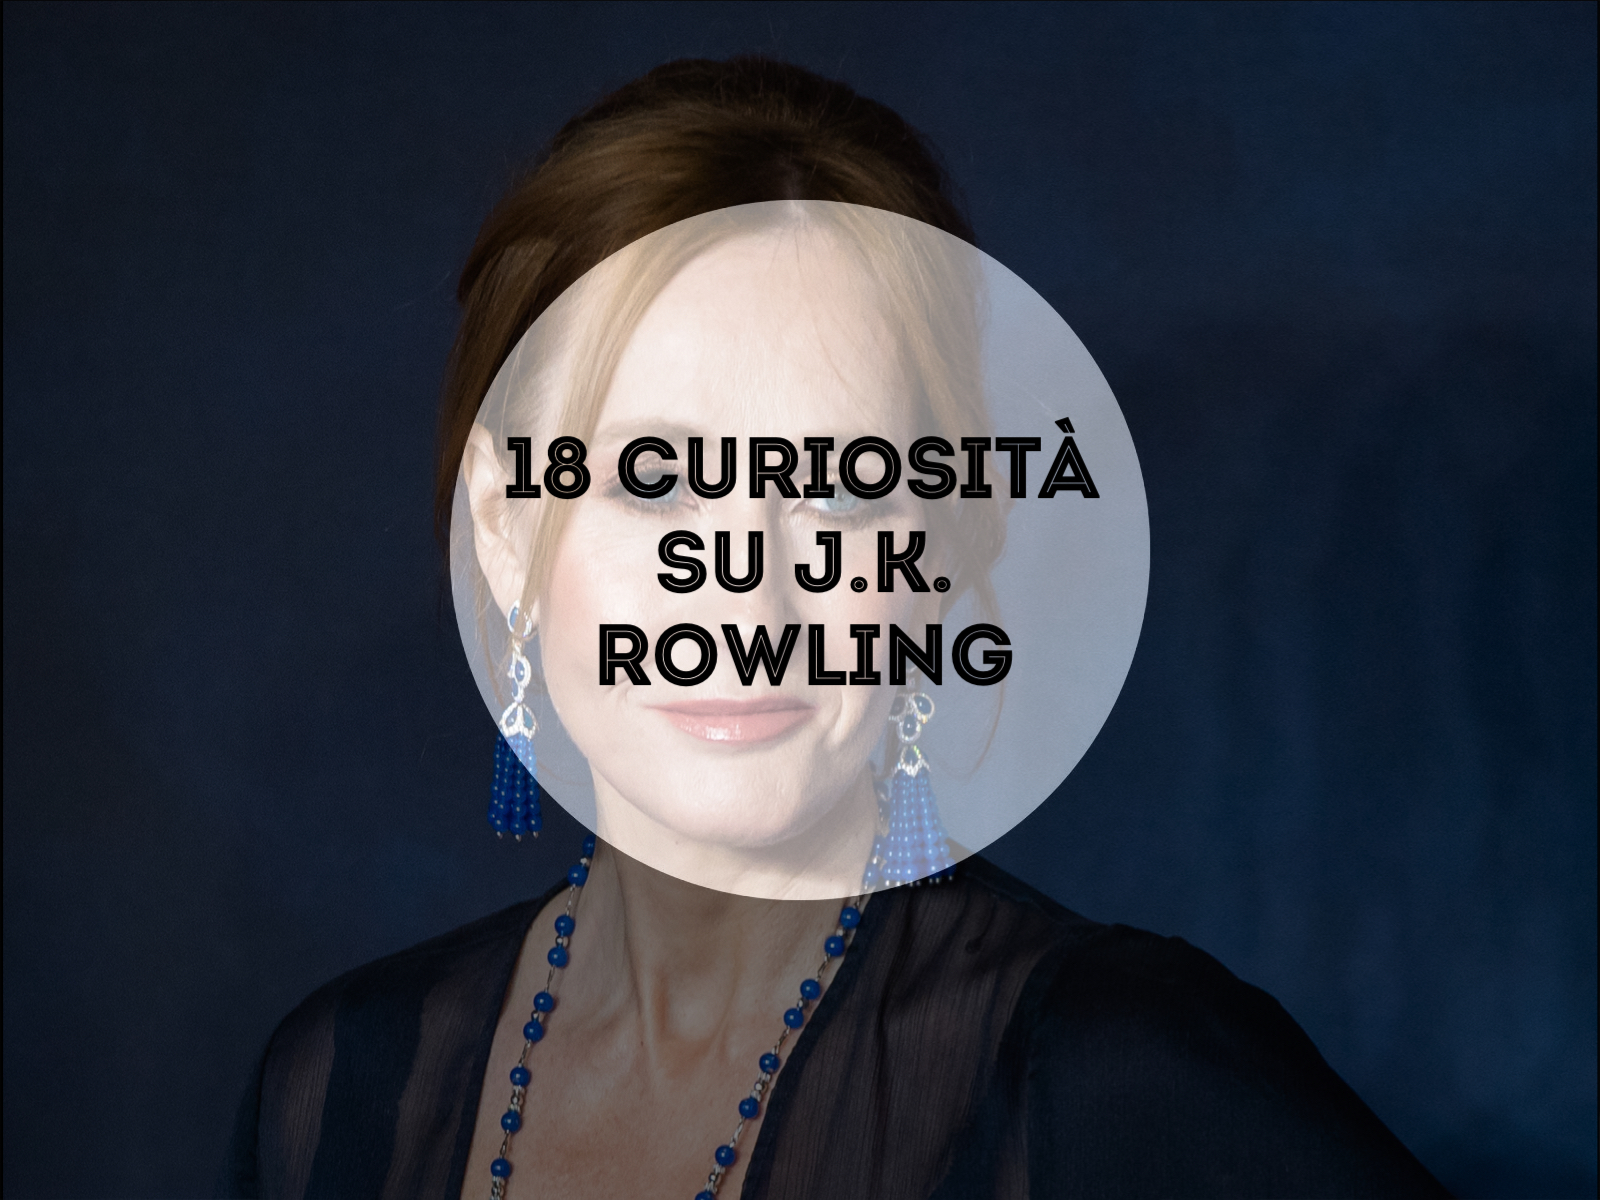 Curiosità su j.k. Rowling